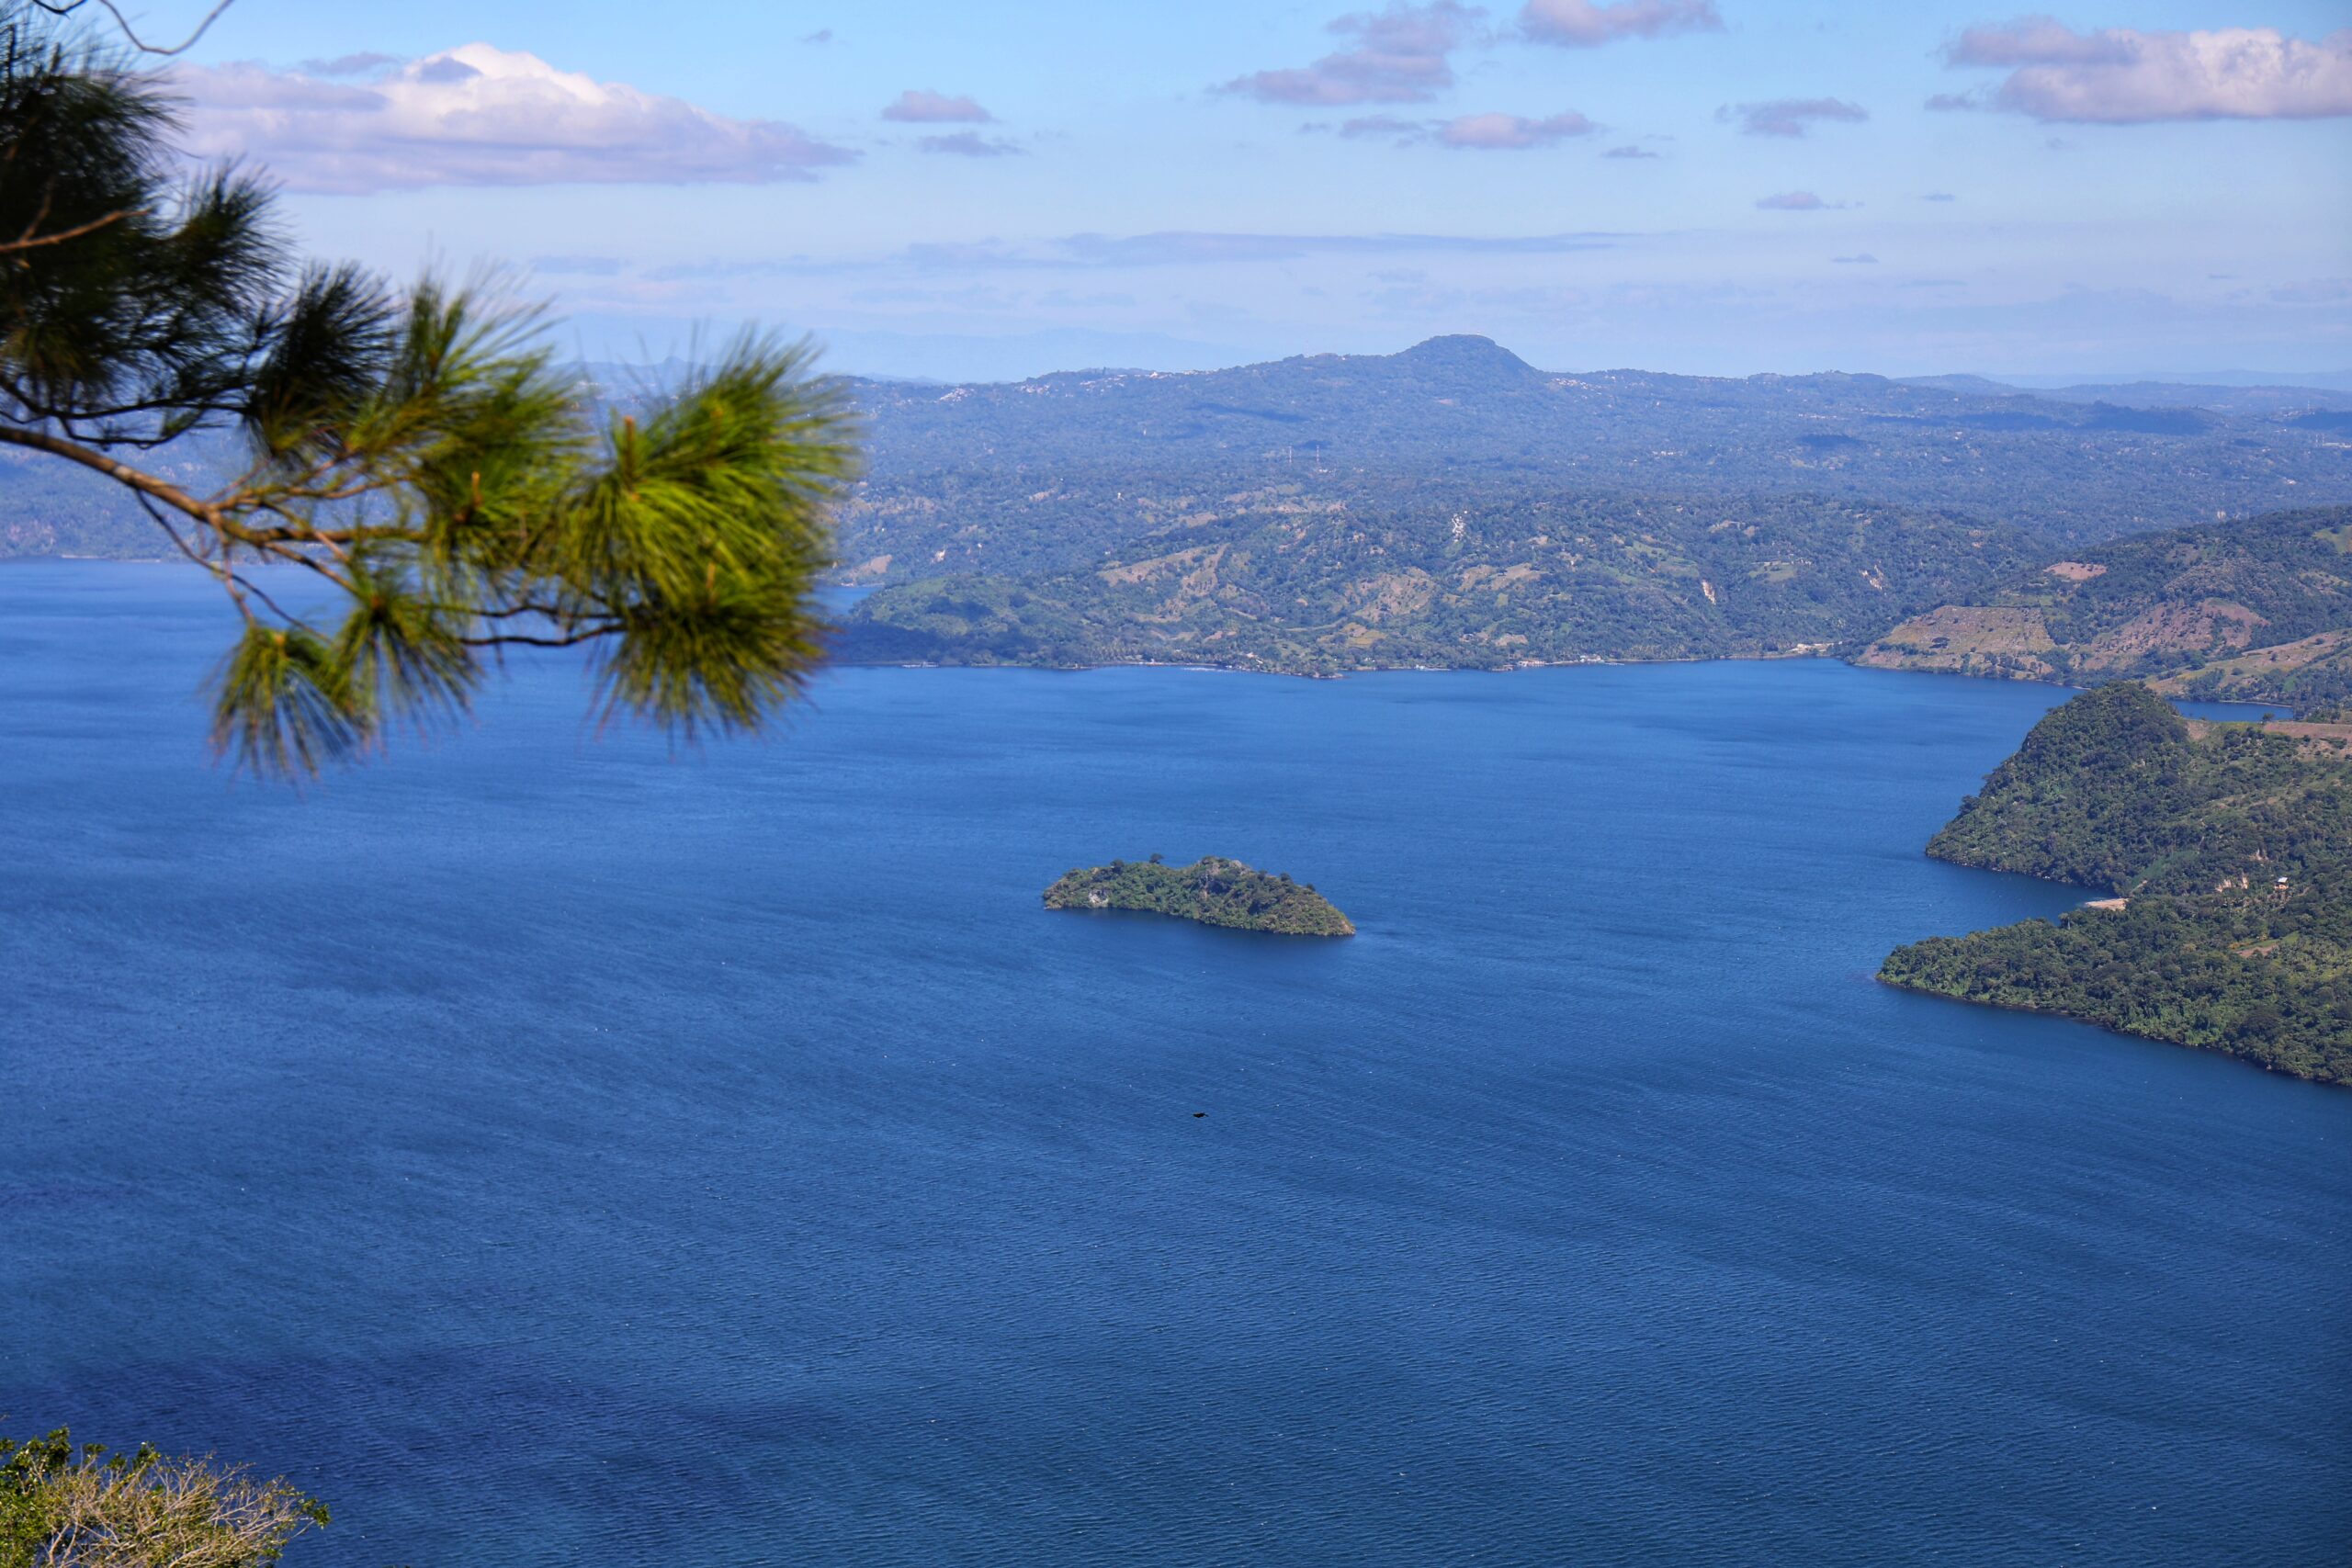 Corredor panorámico Vista al Lago de Ilopango, declarado Zona Turística de Interés Nacional por GOES